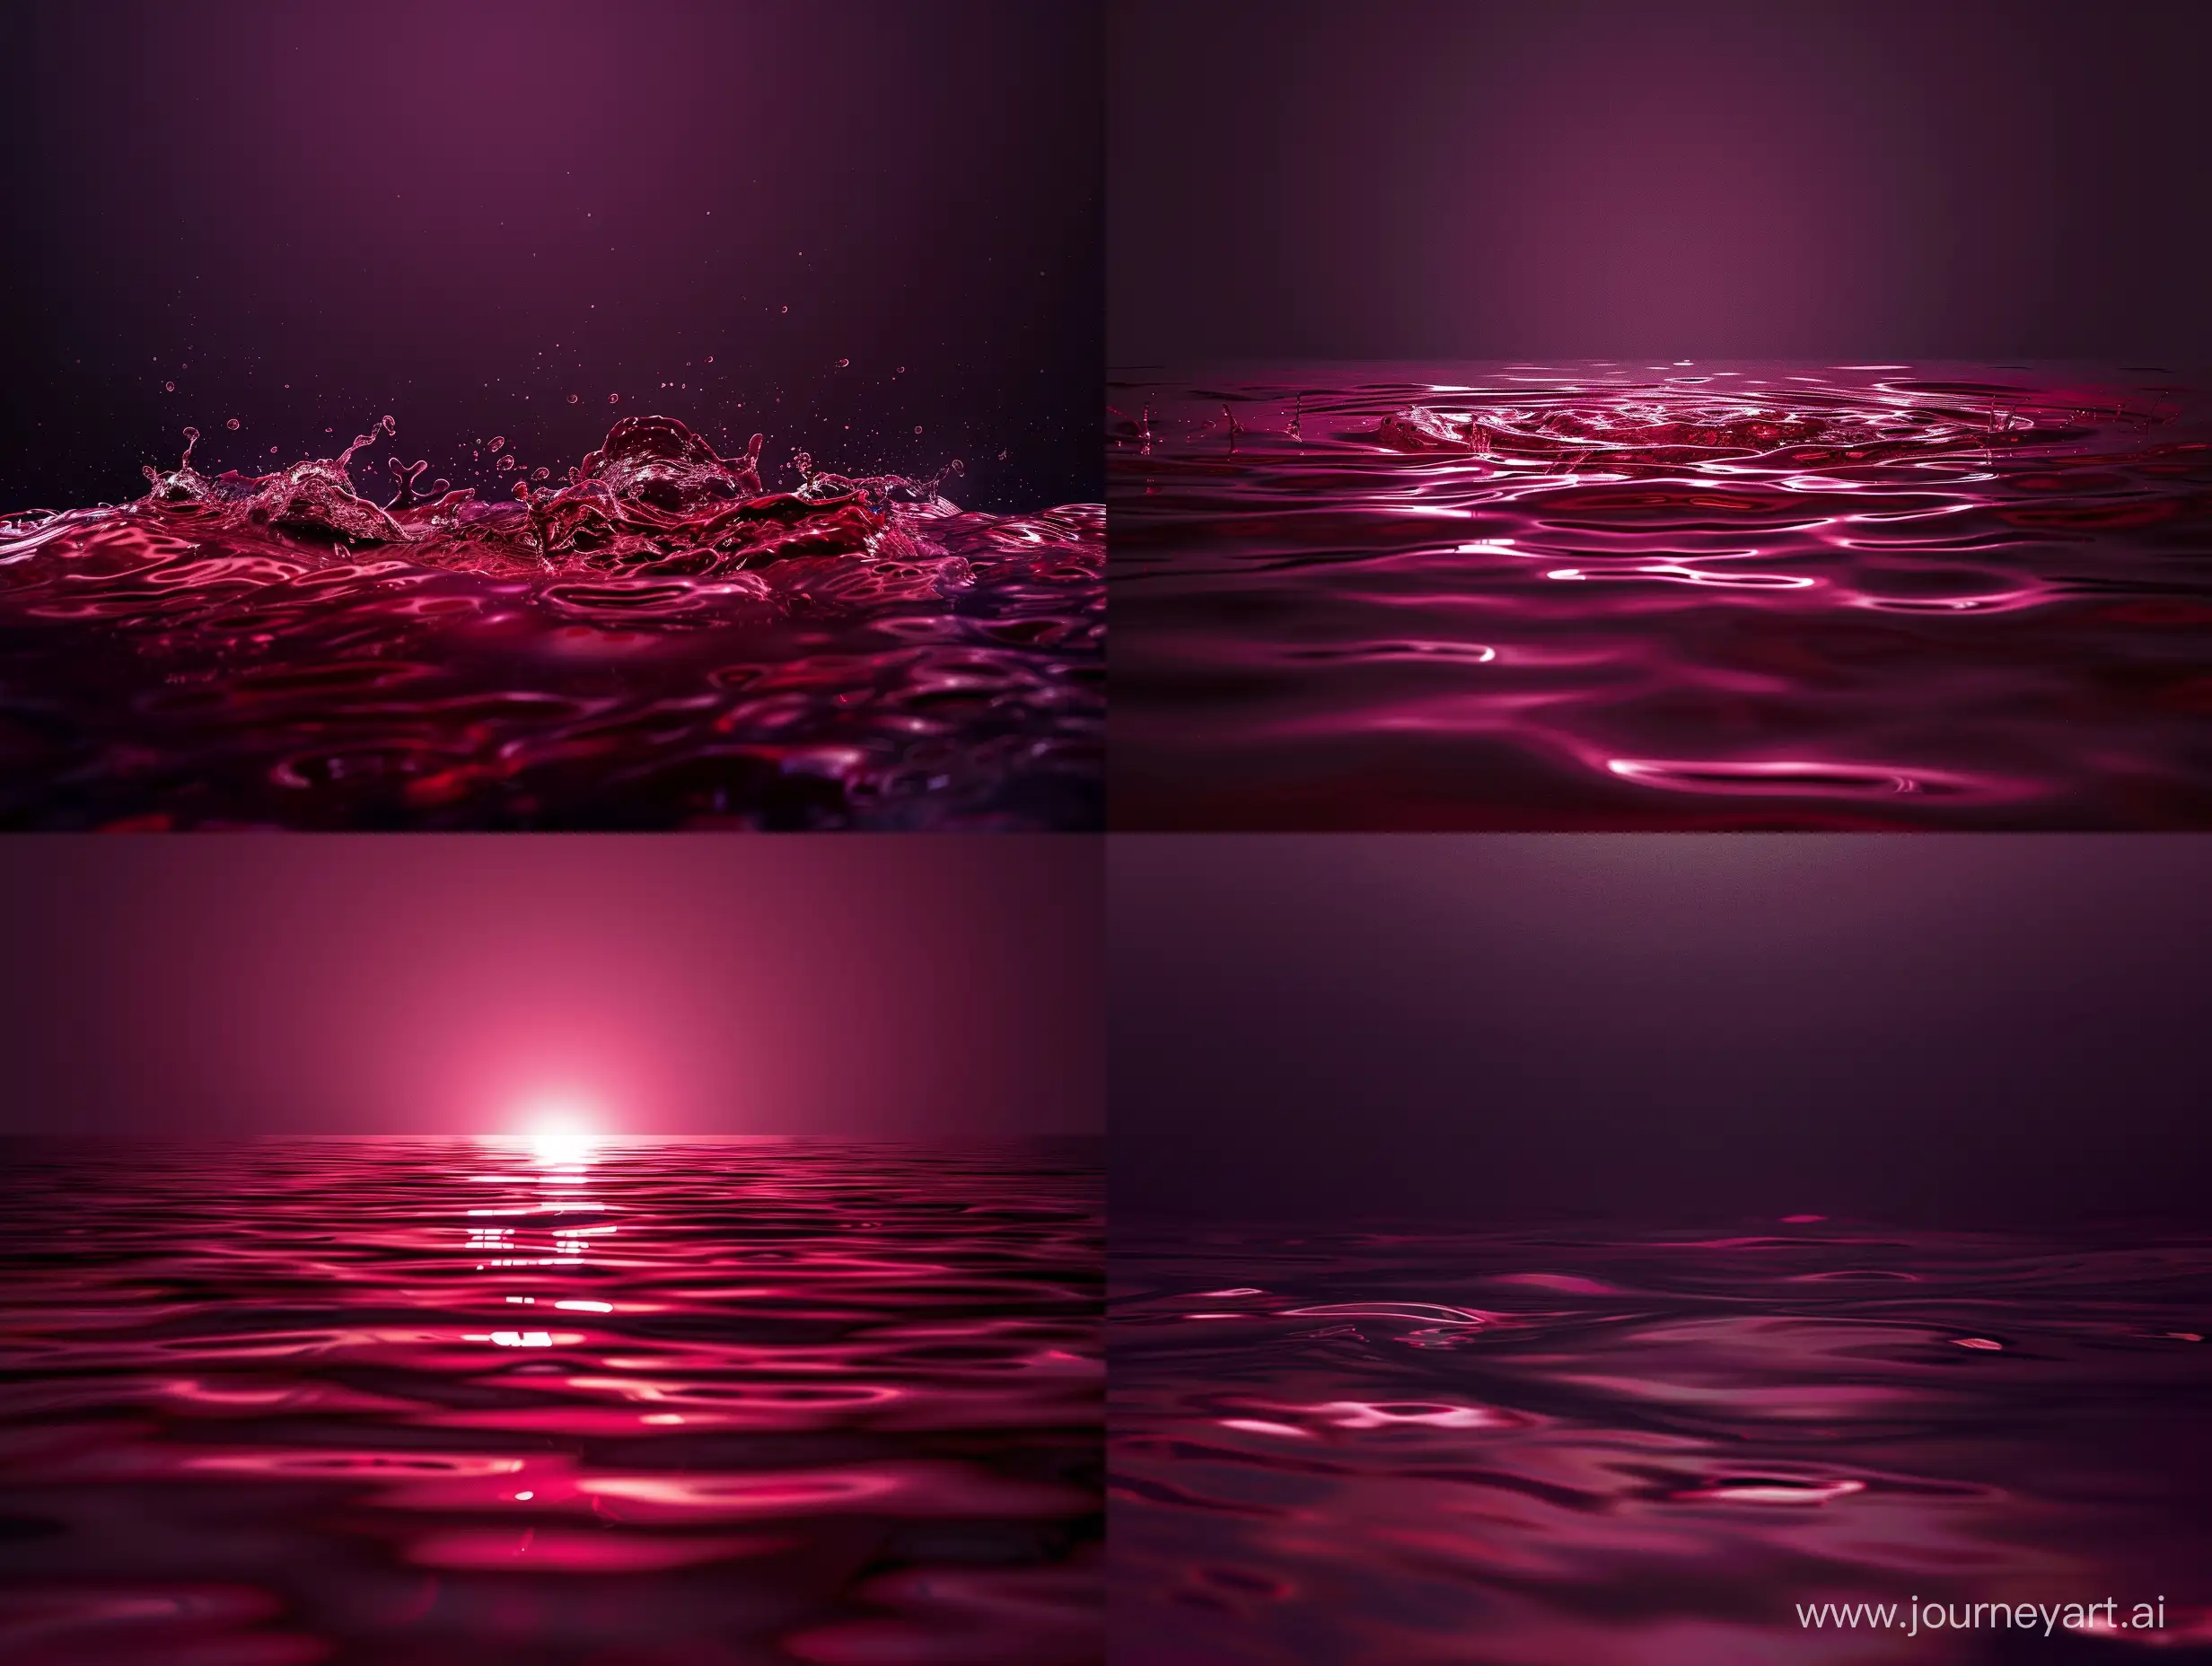 a fine red wine lake surface, dark studio shot, against dark purple background